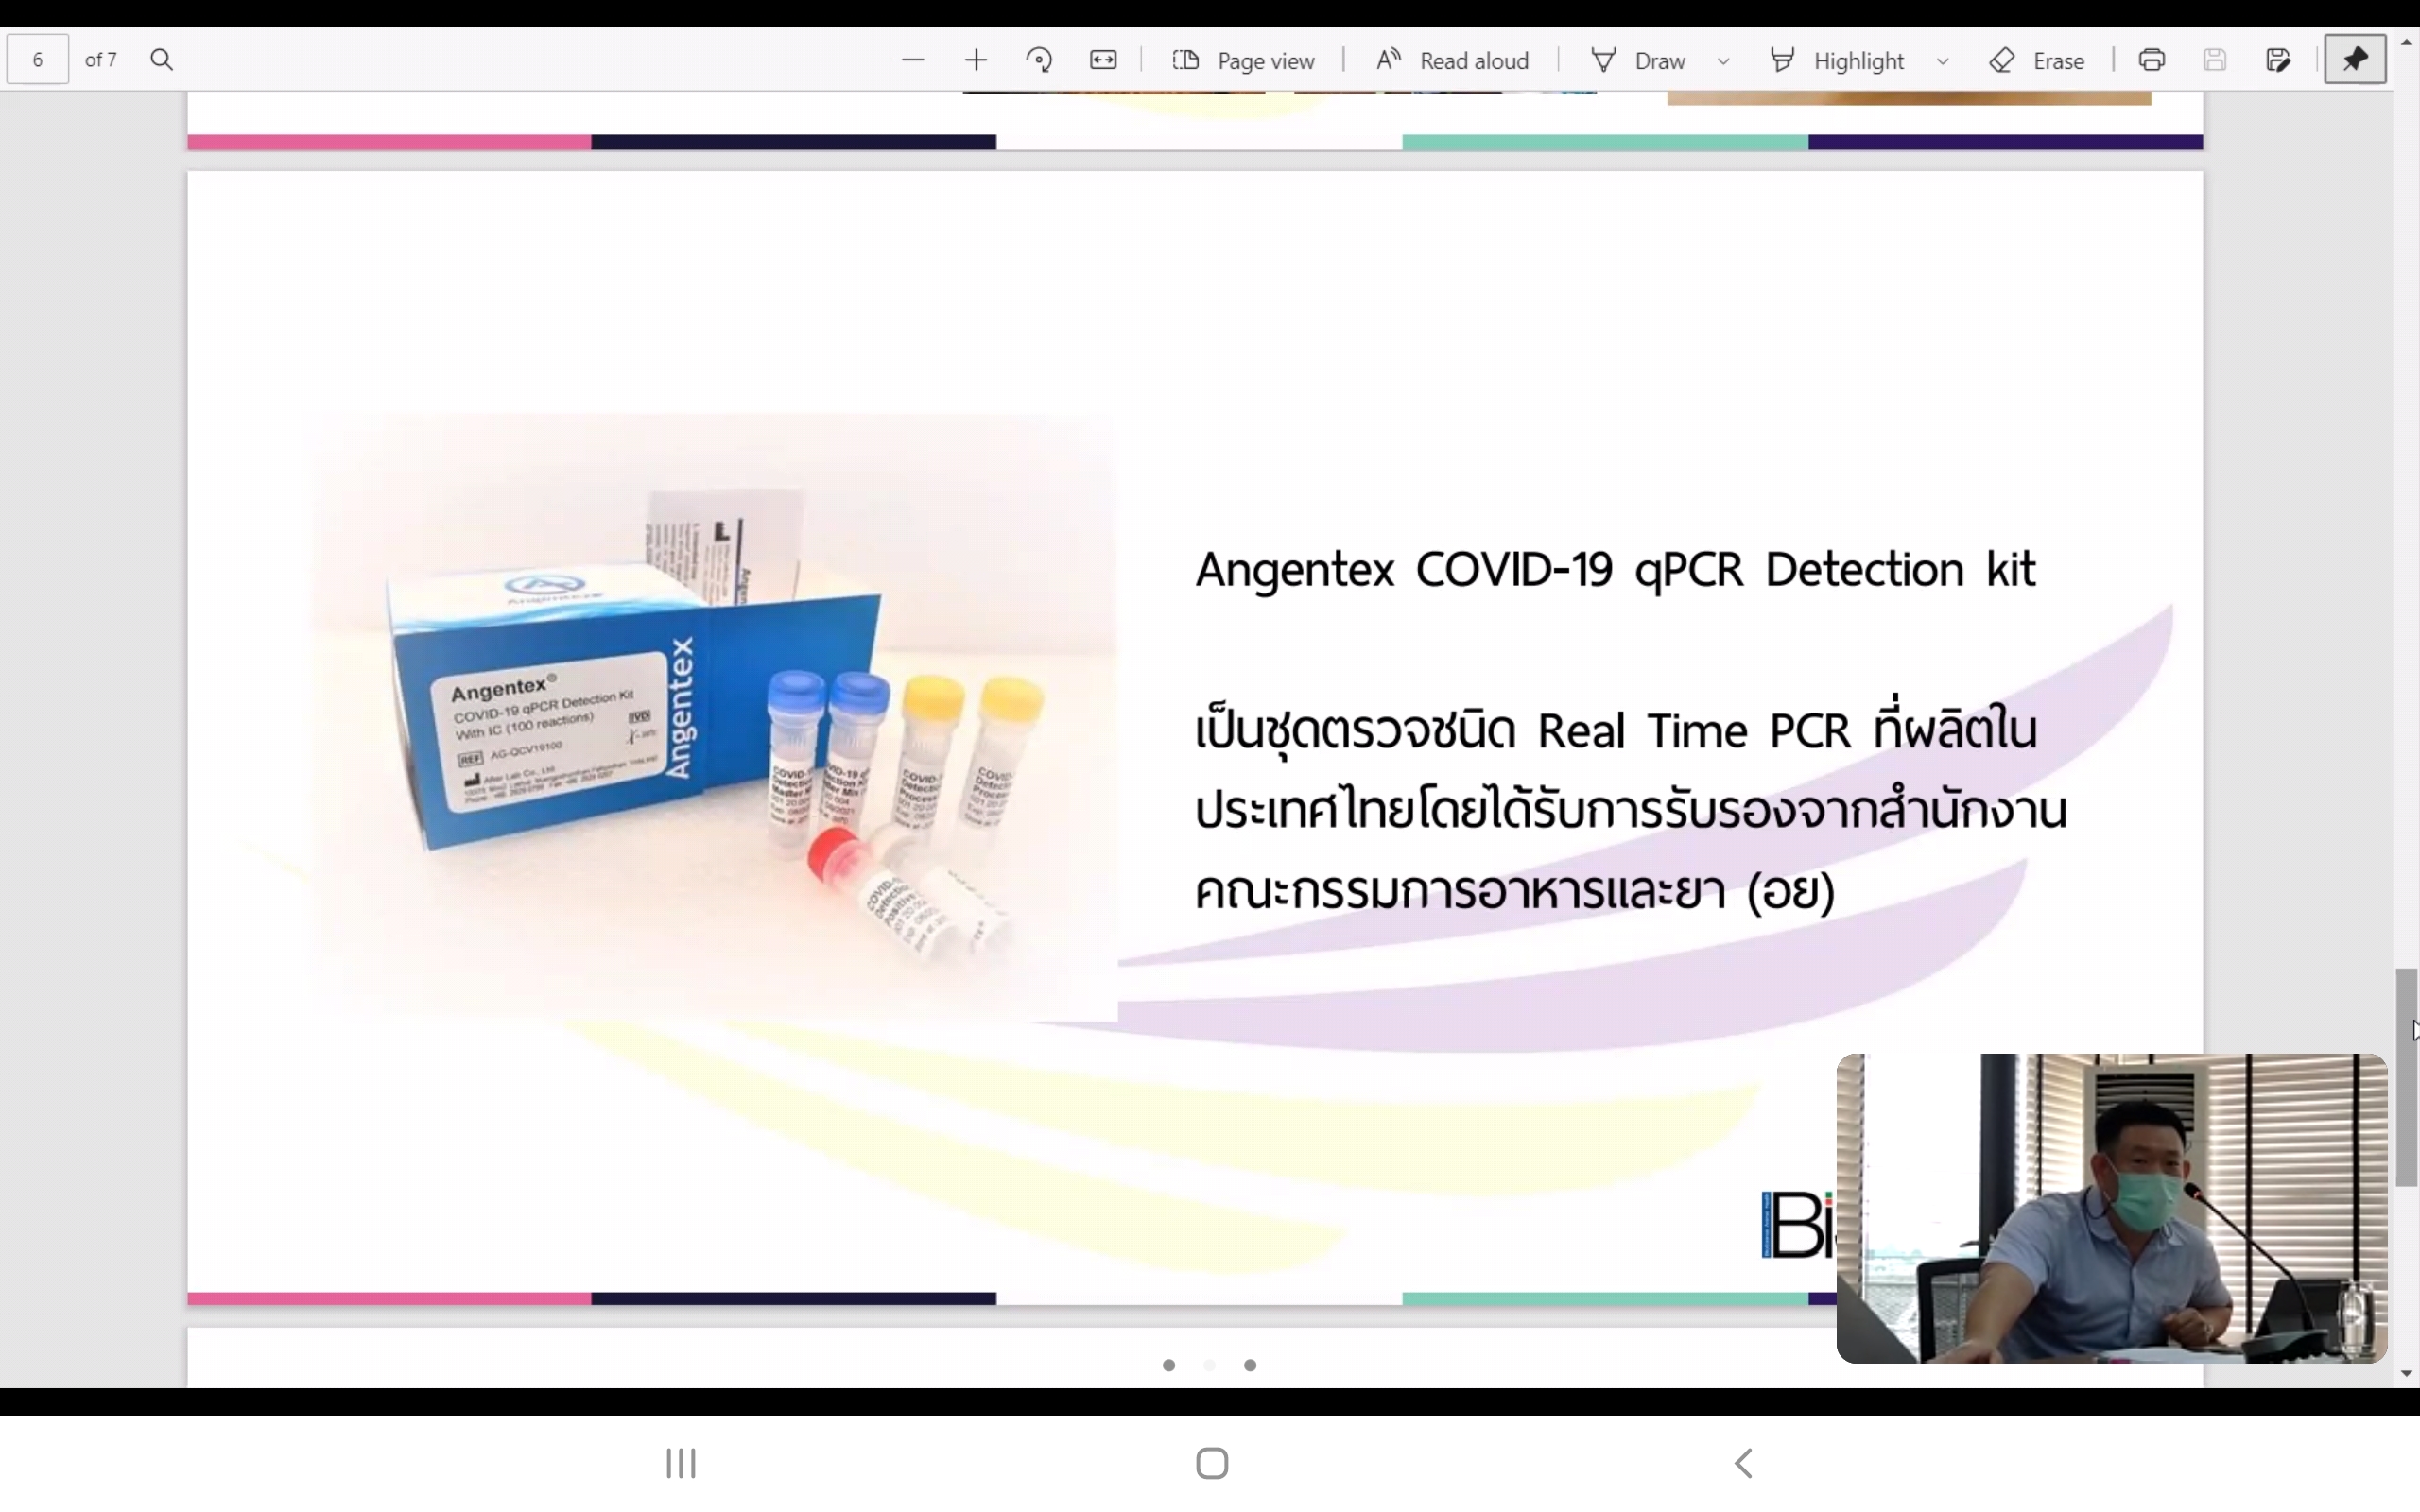 ไบโอซายน์ เปิดนวัตกรรมช่วยชาติ ผลิตชุดตรวจโควิด RT PCR รายแรกของไทย  ประหยัดค่าใช้จ่ายผู้ป่วย-รัฐบาล แก้ปัญหาขาดแคลนชุดตรวจ ทดแทนการนำเข้า อ.ย. รับรองใช้ในรพ.และแล็บหลายแห่ง